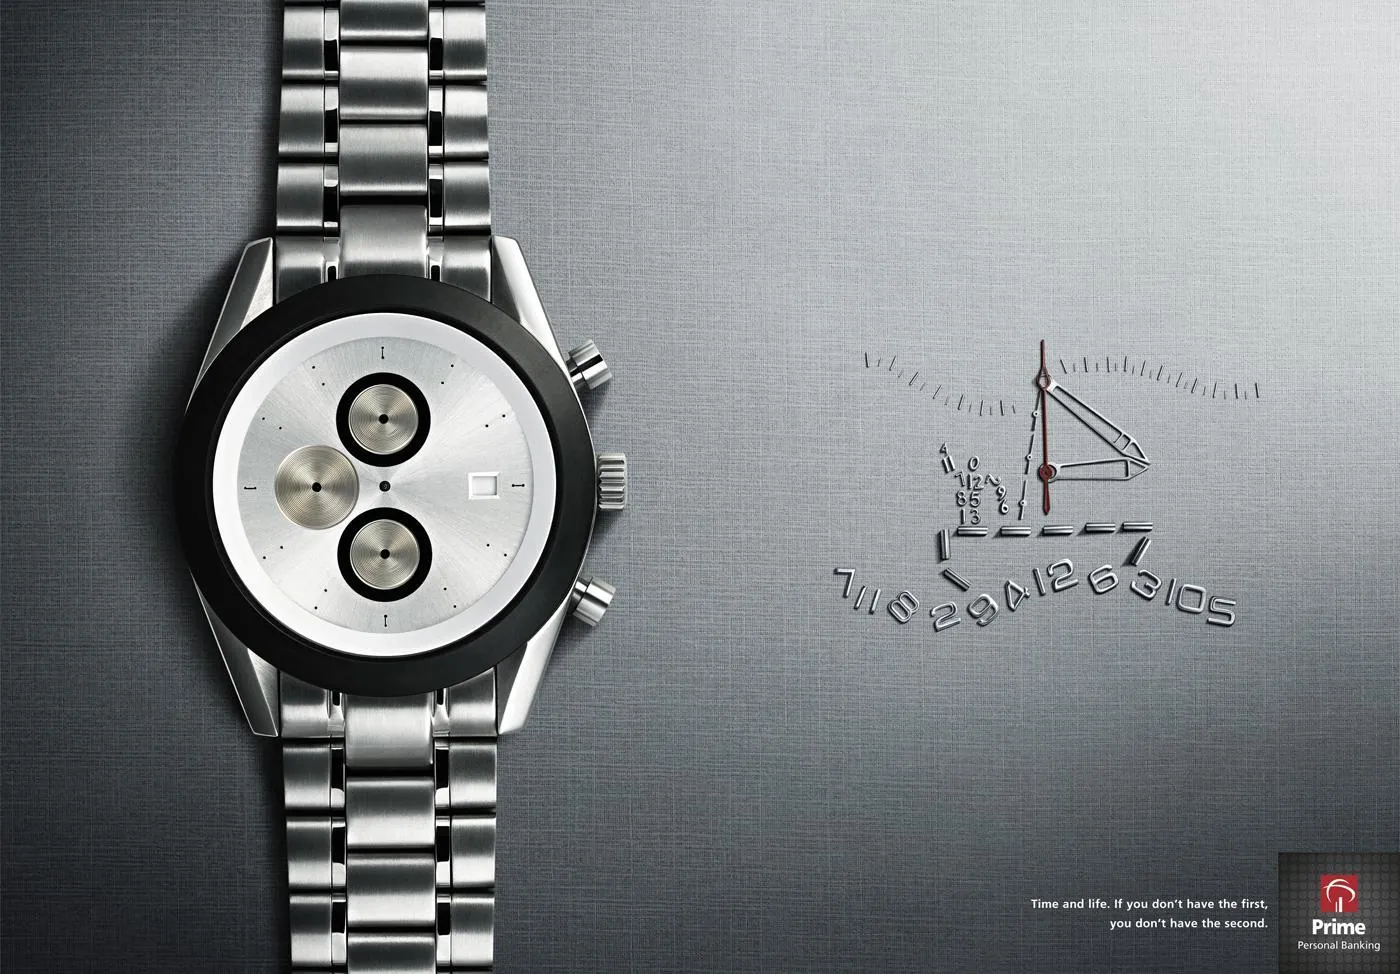 Creative time. Креативная реклама часов наручных. Креативная реклама часы. Реклама часы креатив. Наручные часы реклама.